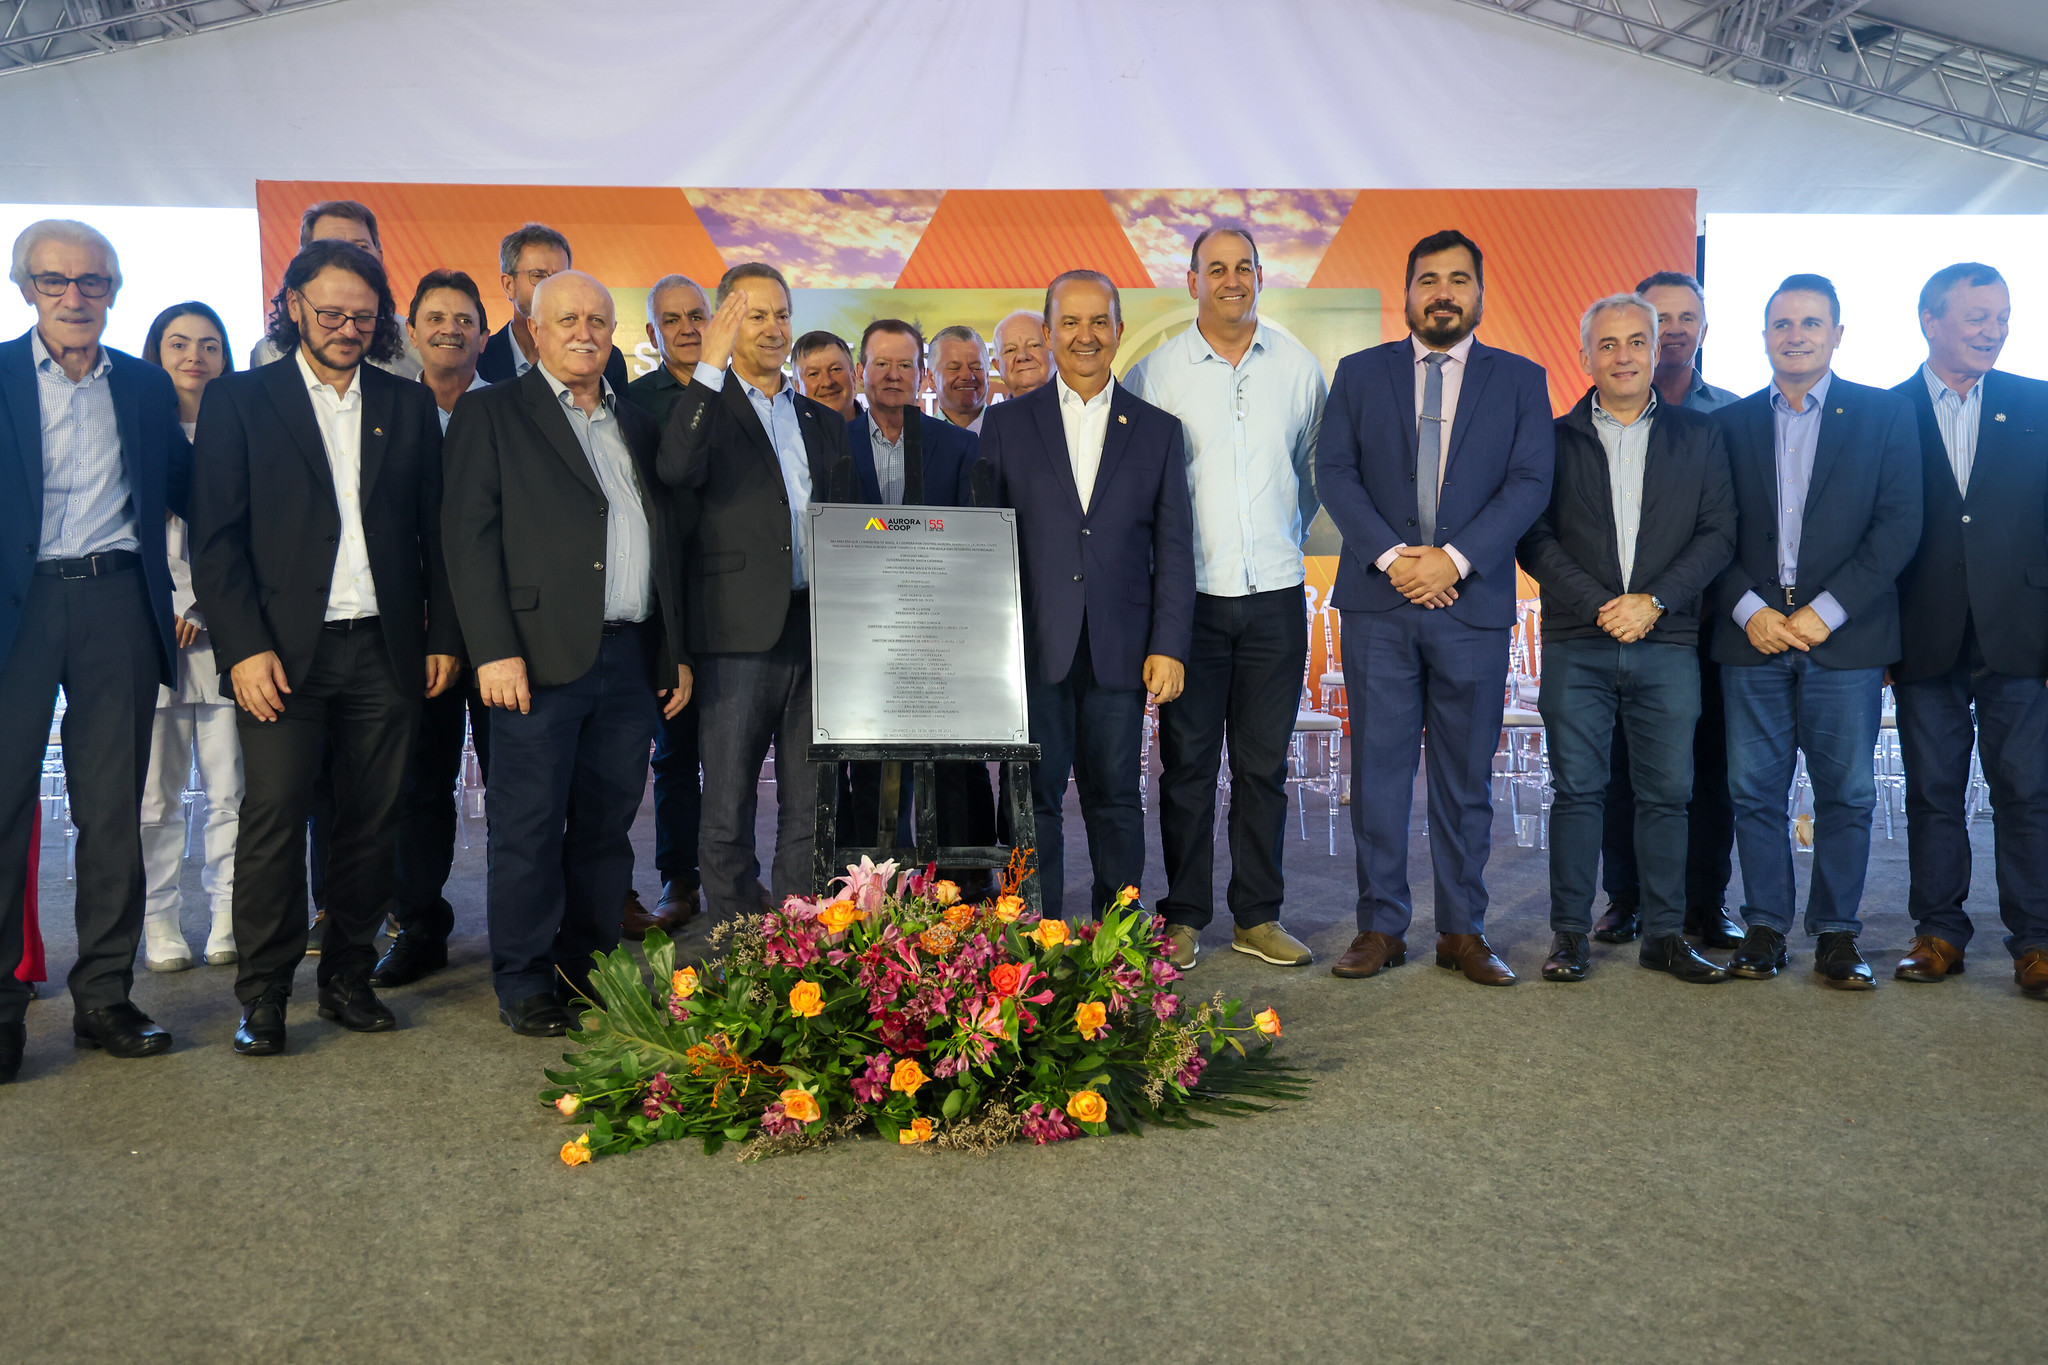 Nova fábrica da Aurora Alimentos é inaugurada em Chapecó com a presença do governador